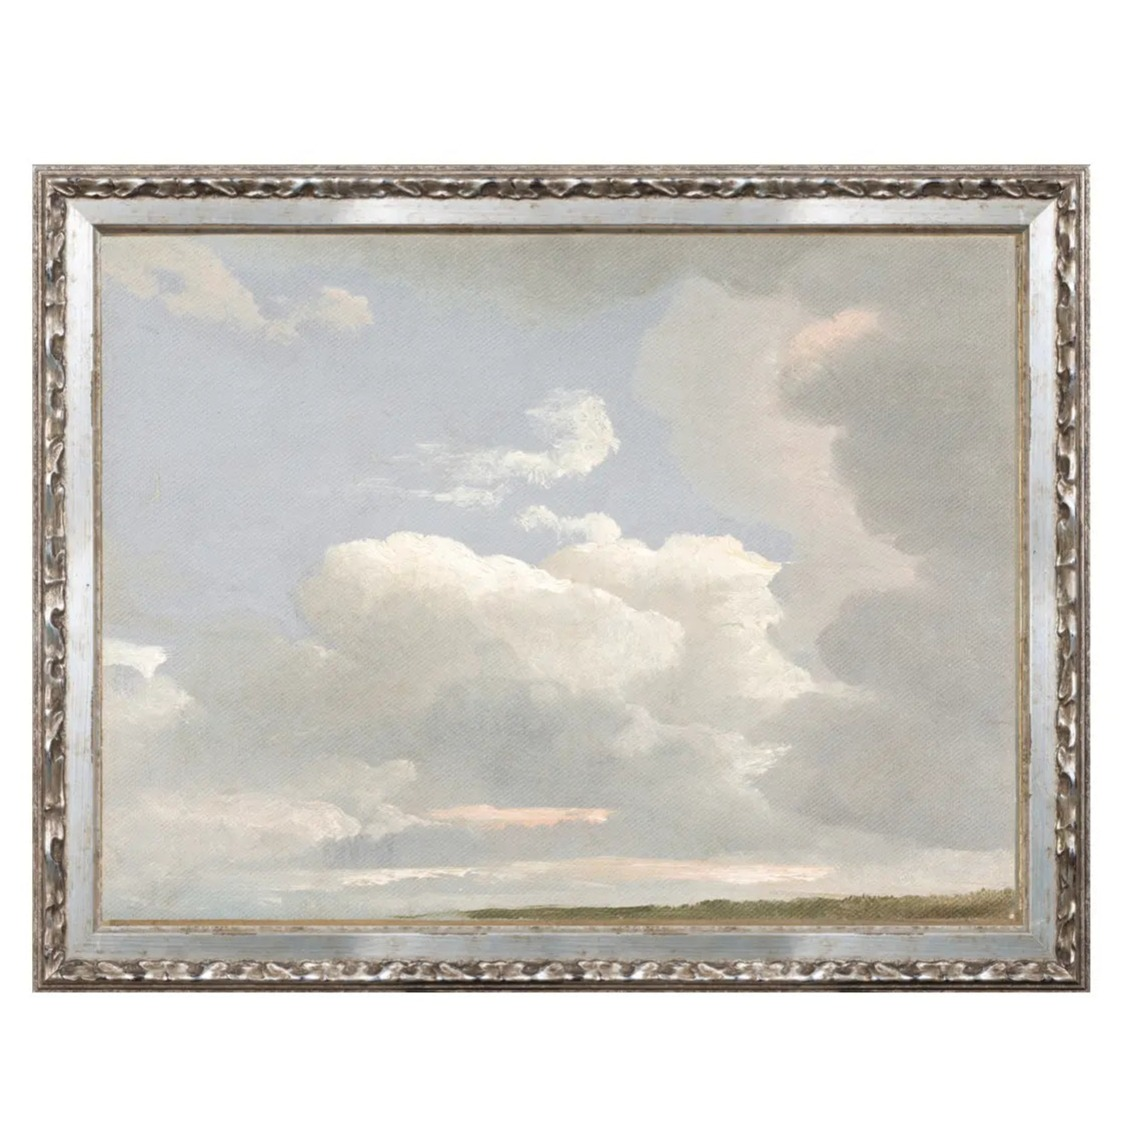 Home Smith Petite Scapes - Cloud Study c. 1800 Celadon Art